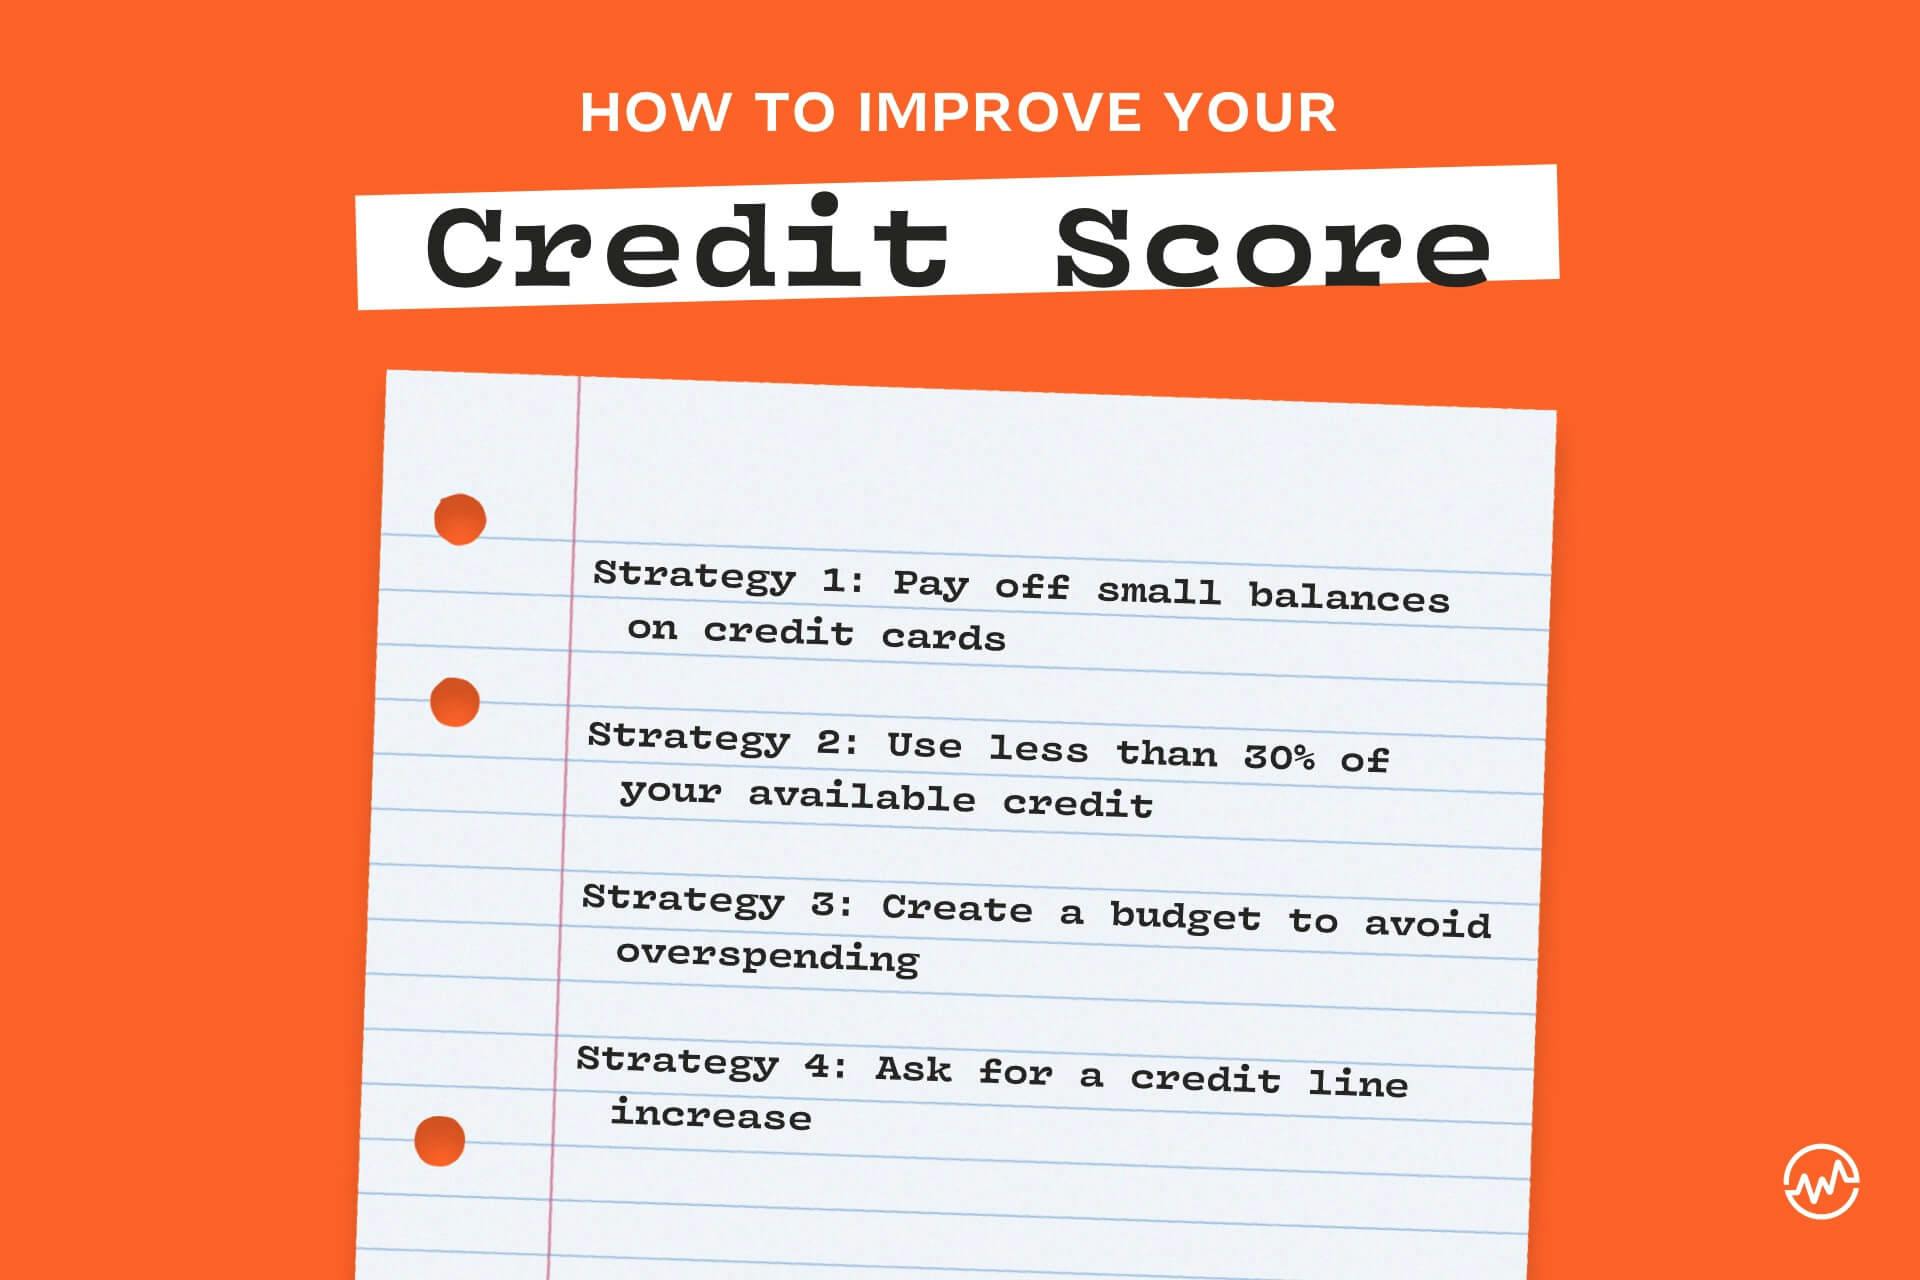 hoe verbetert u uw credit score: 4 strategieën